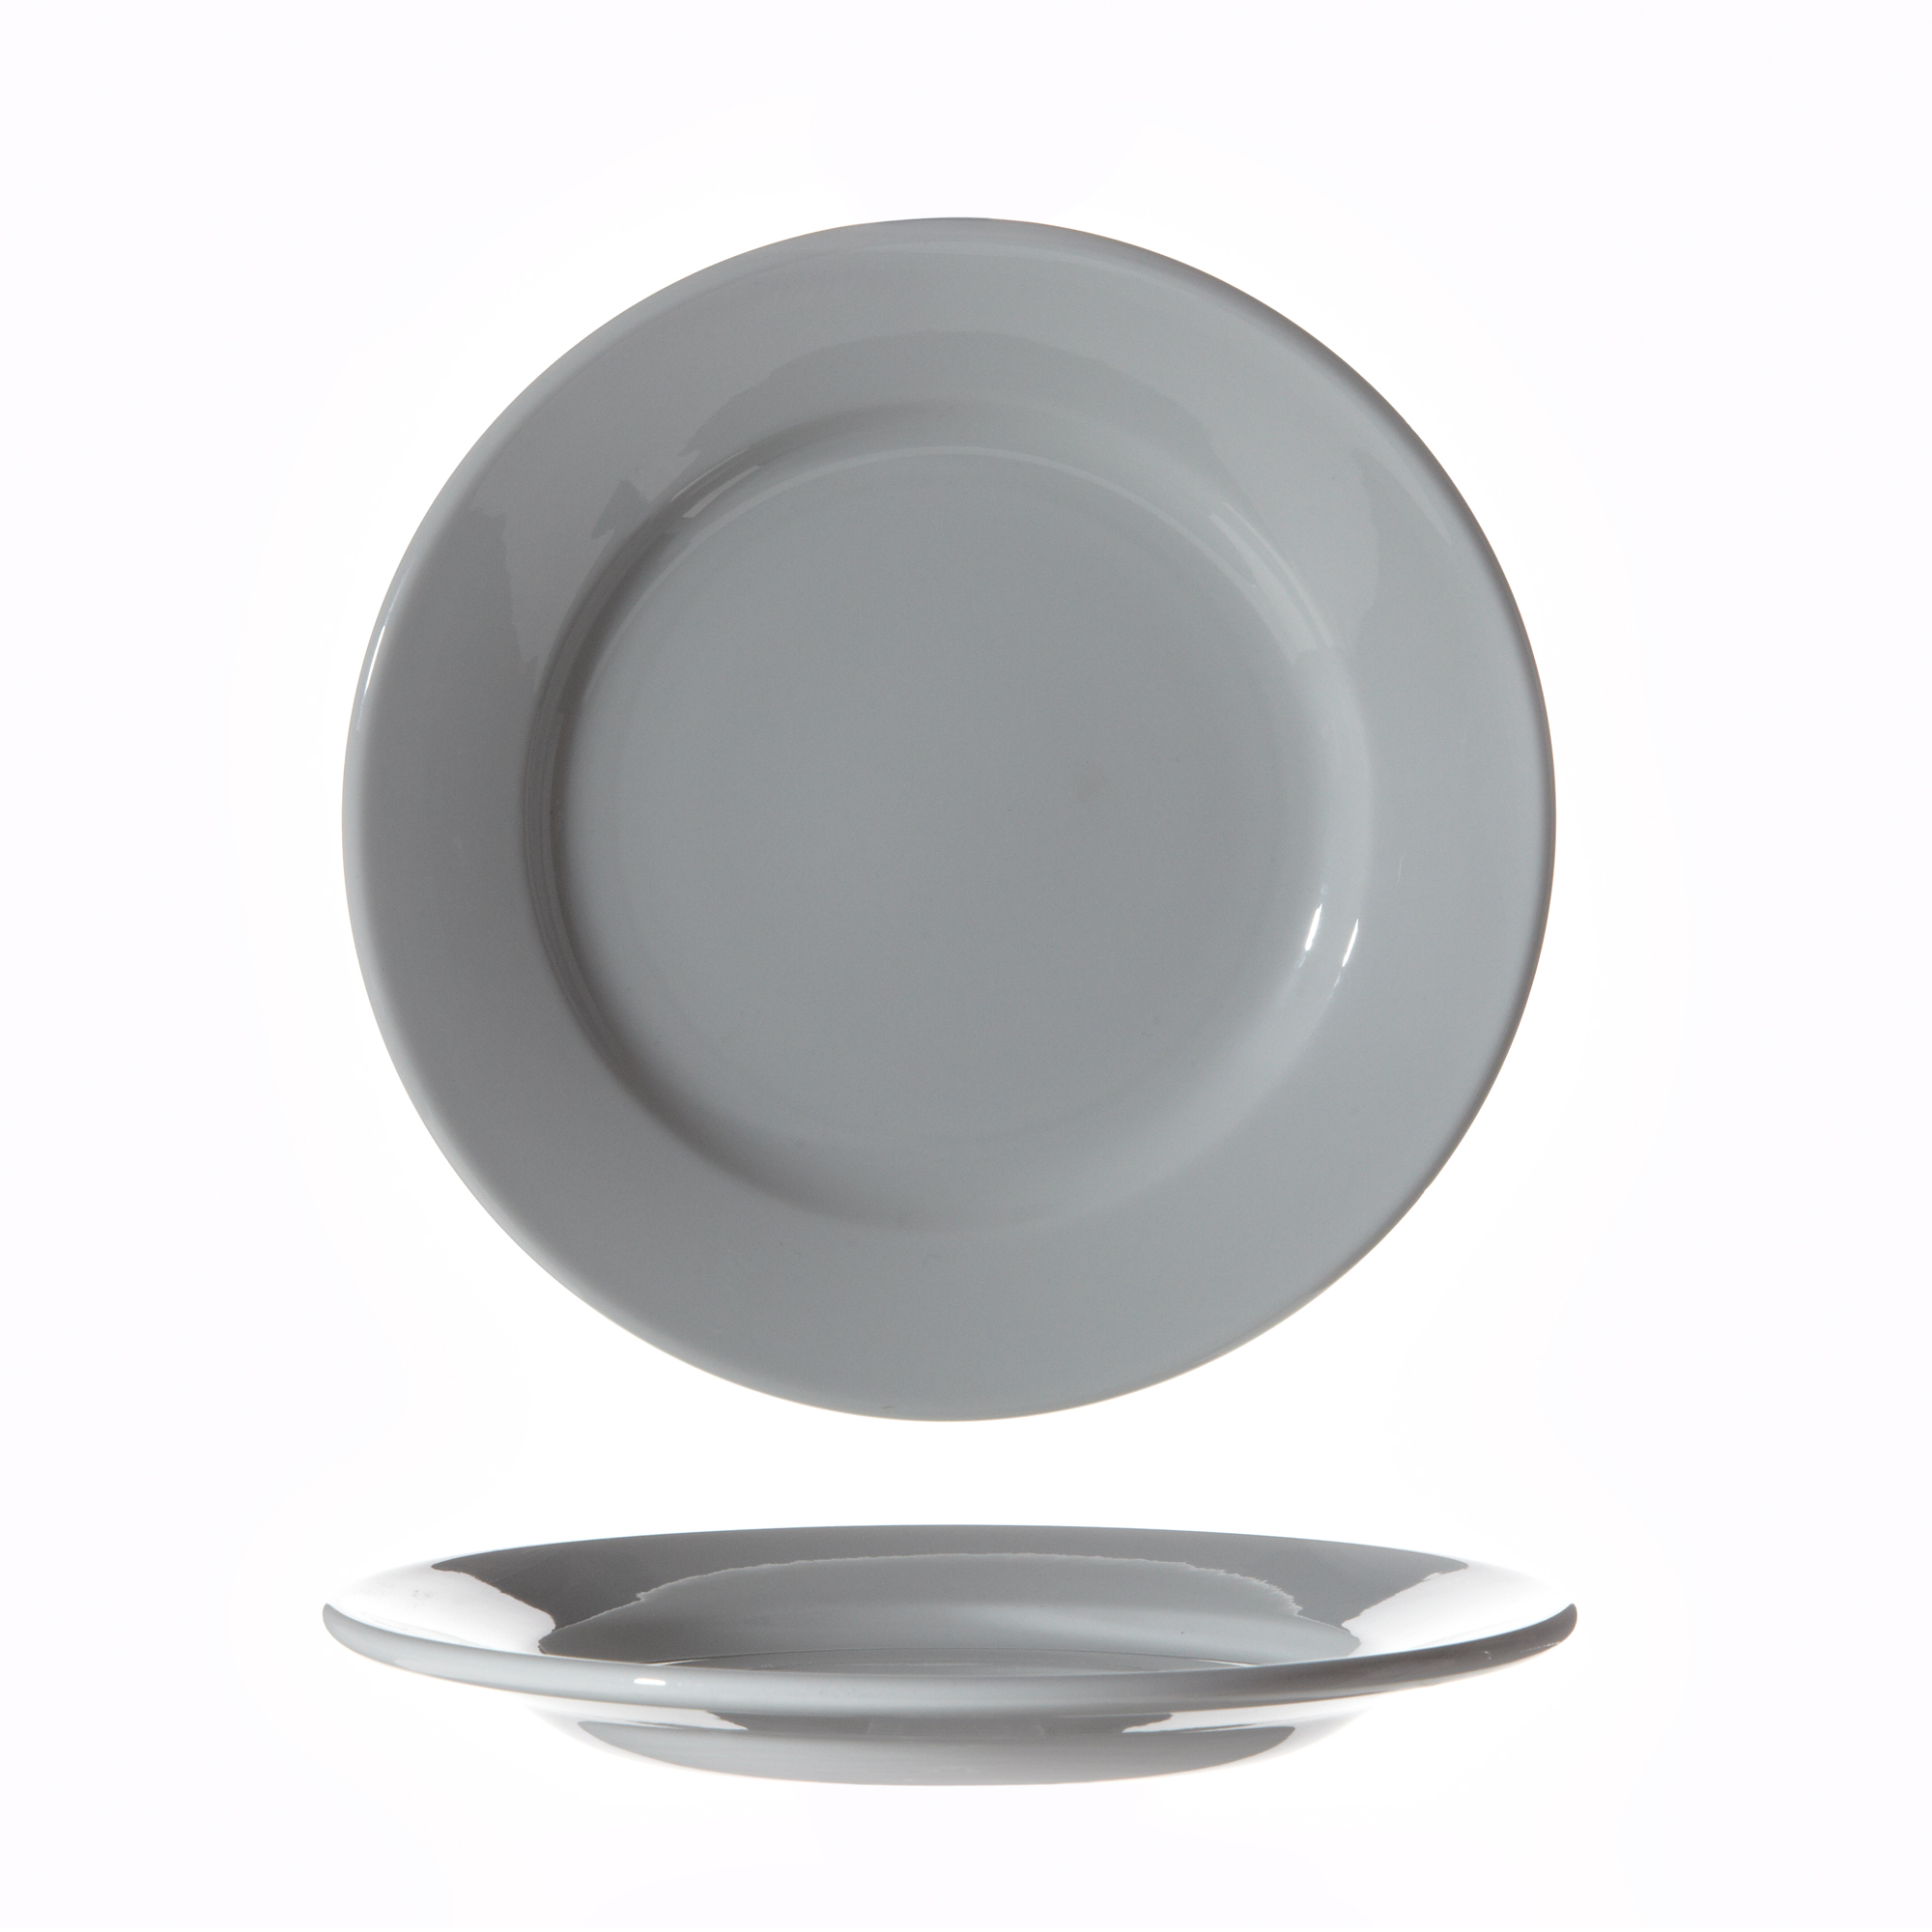 Assiette plate Bourrelet n° 3 en porcelaine diam 228 mm